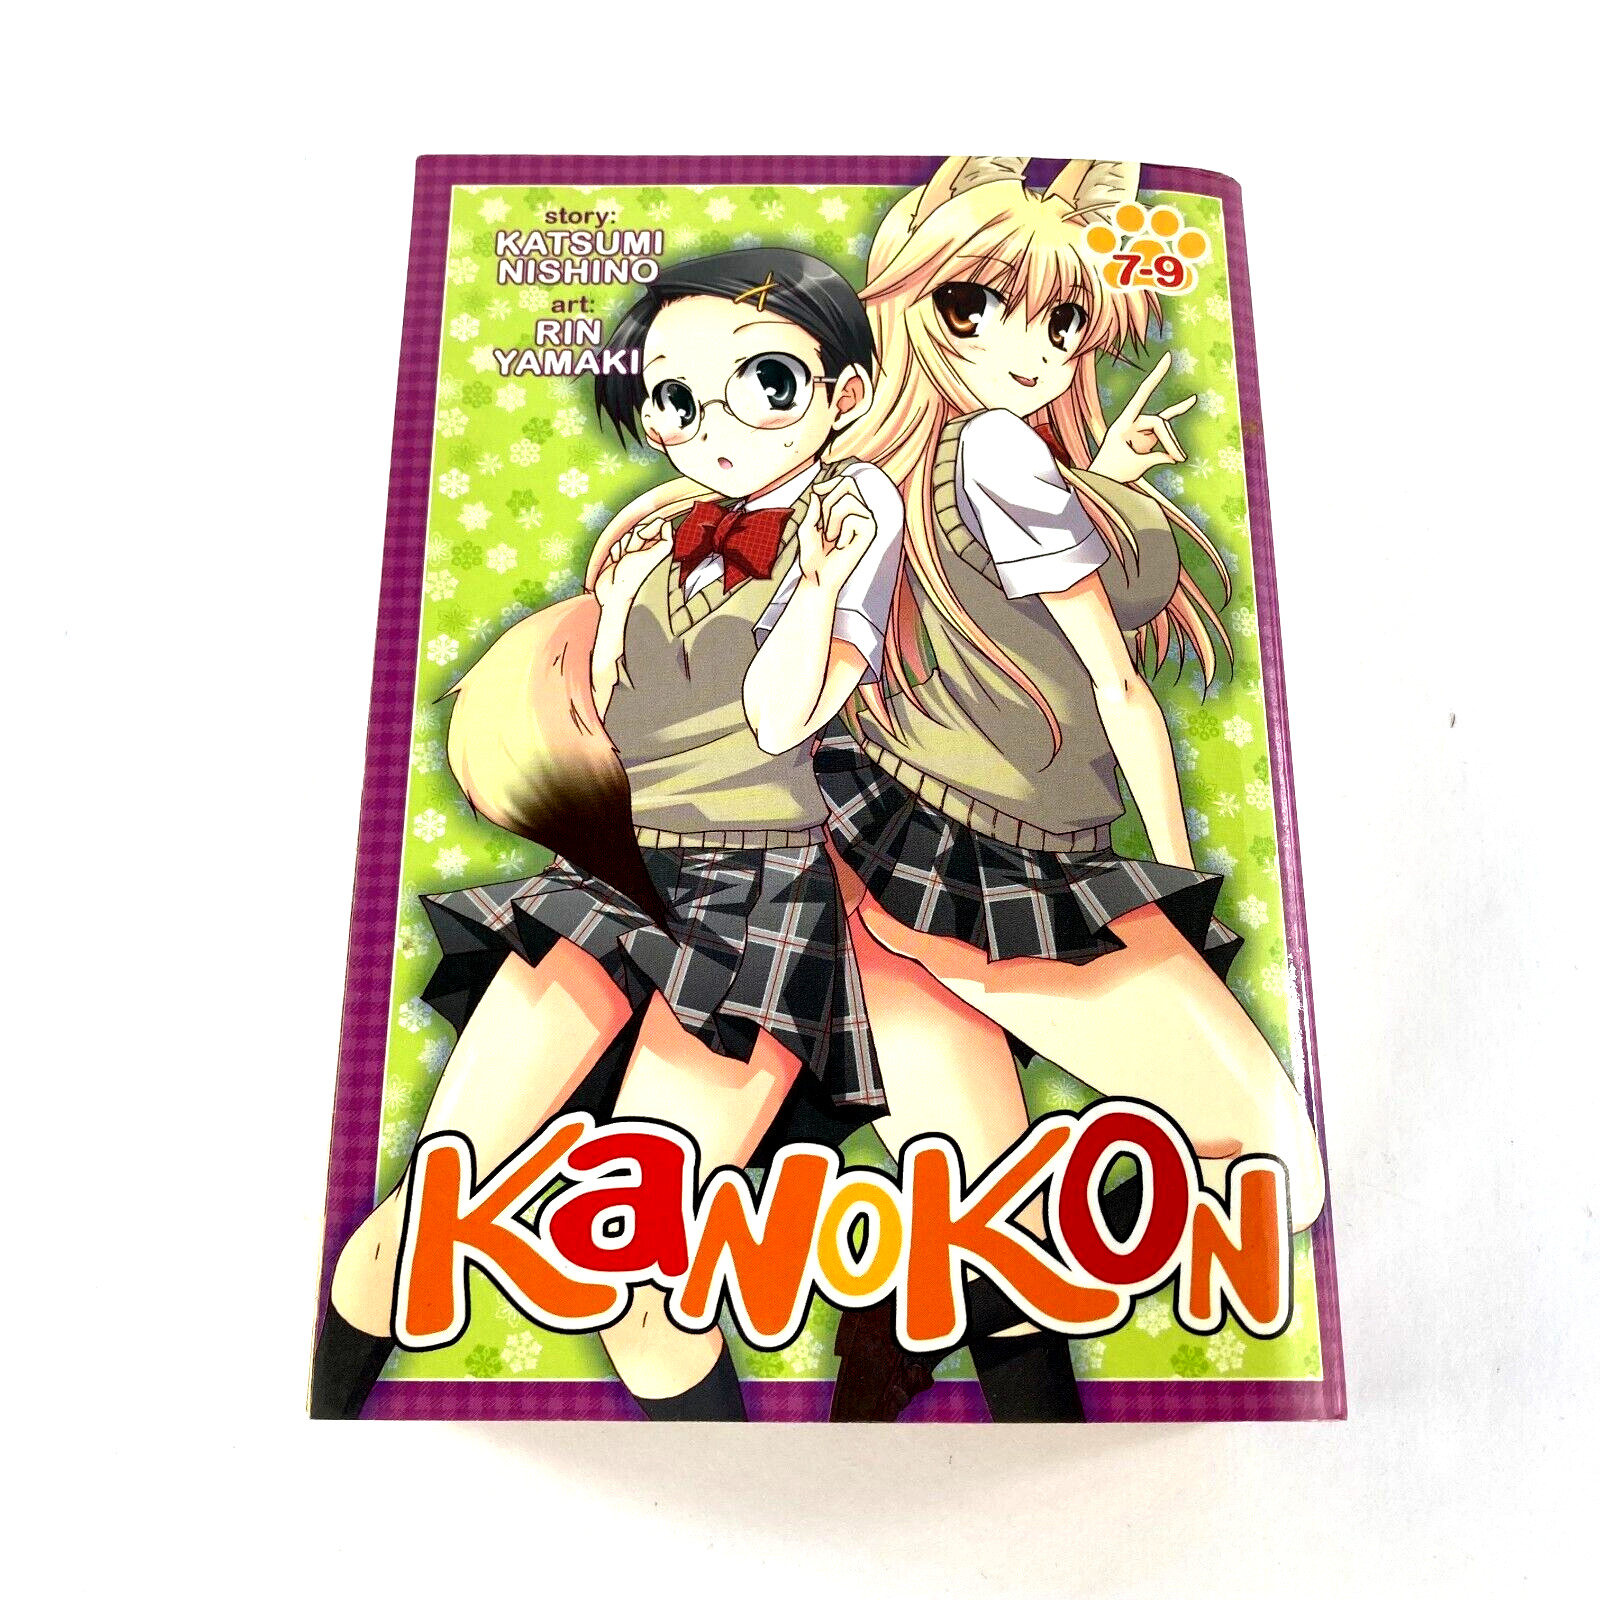 Kanokon Vol. 7-9 Omnibus by Nishino & Yamaki English Manga